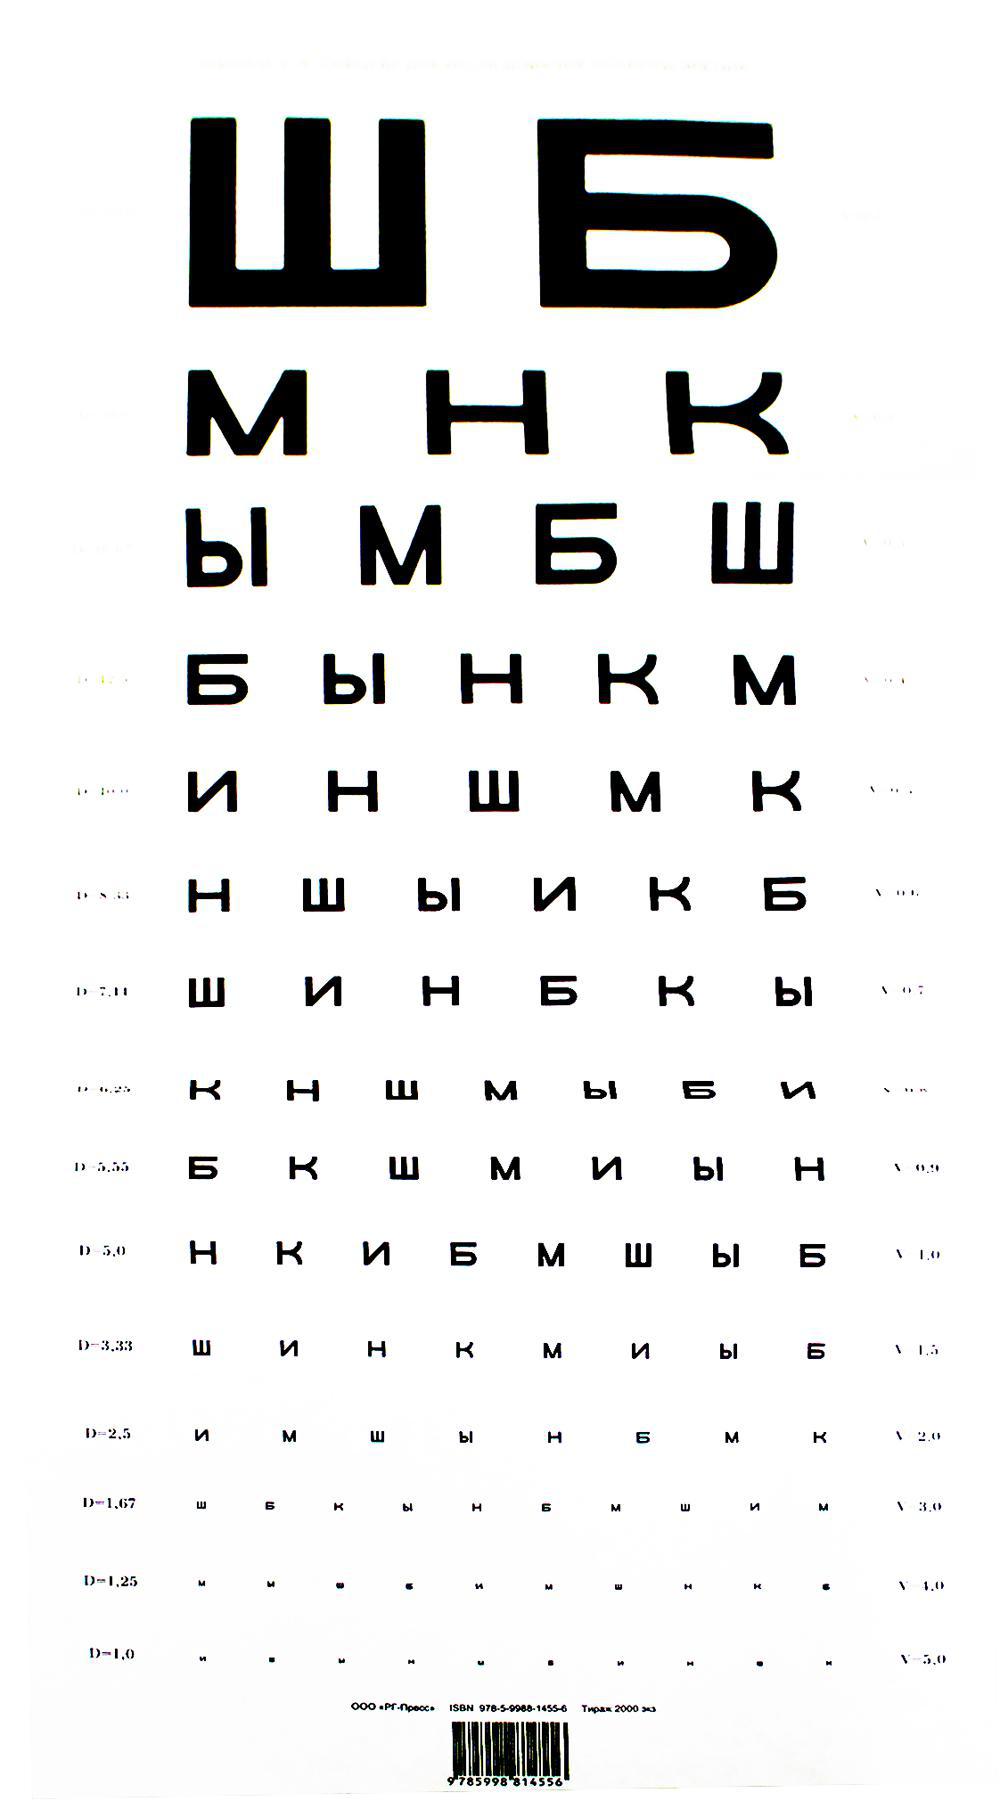 Таблица Д.А. Сивцева для исследования остроты зрения